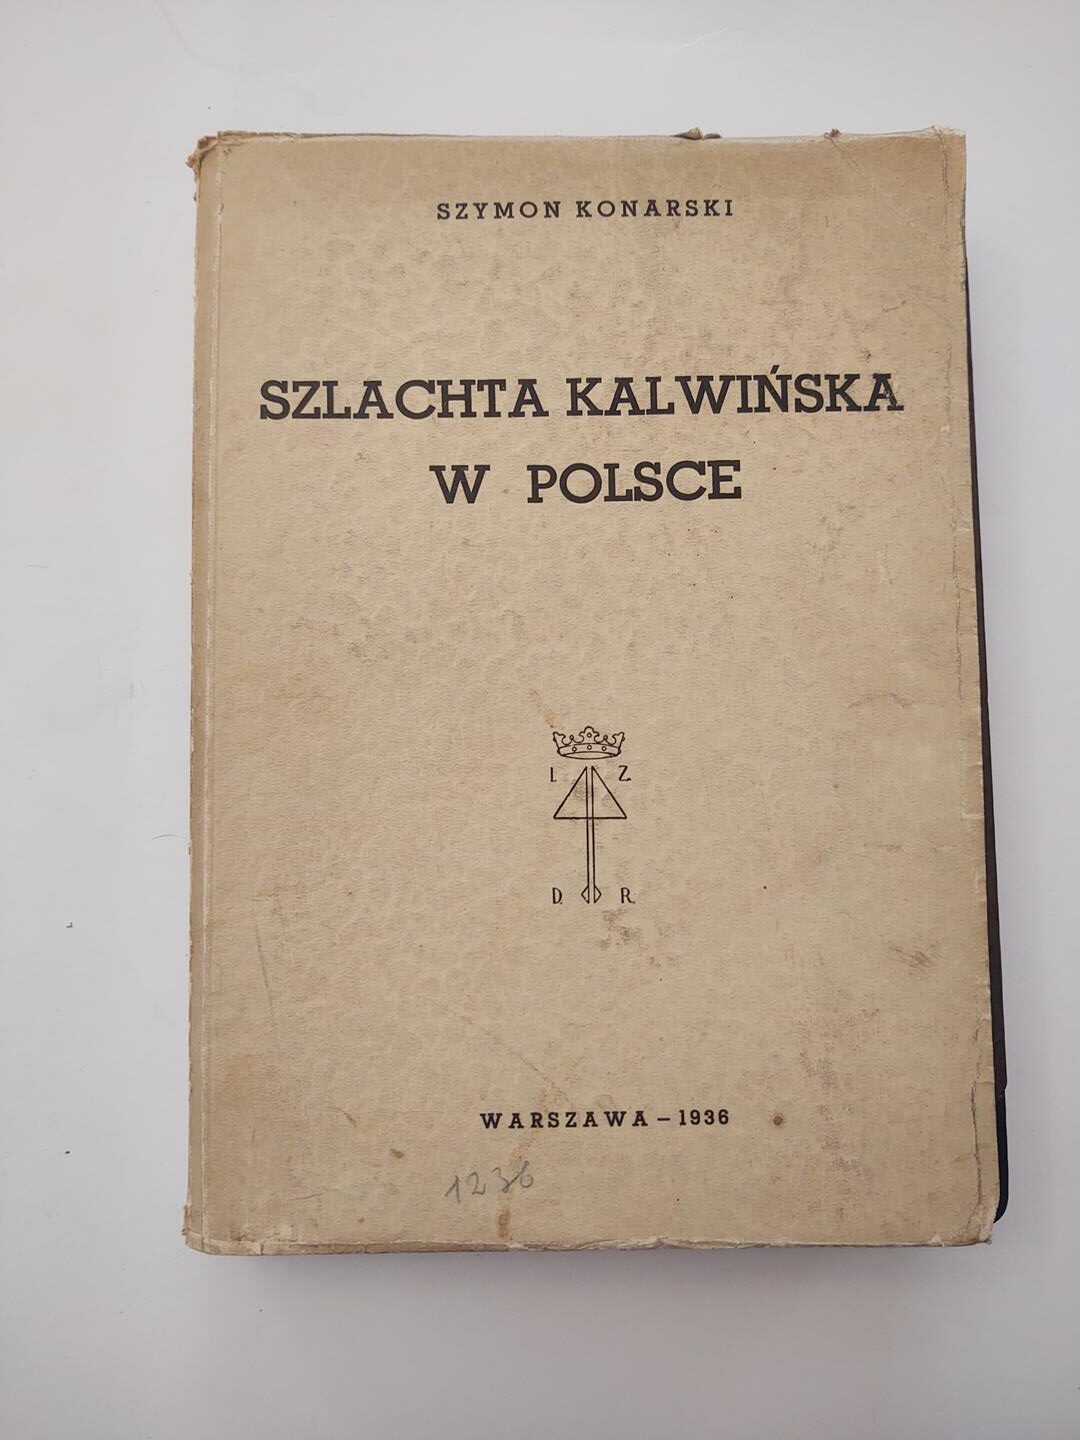 Książka "Szlachta kalwińska w Polsce" Szymon Konarski, Warszawa 1936 r.